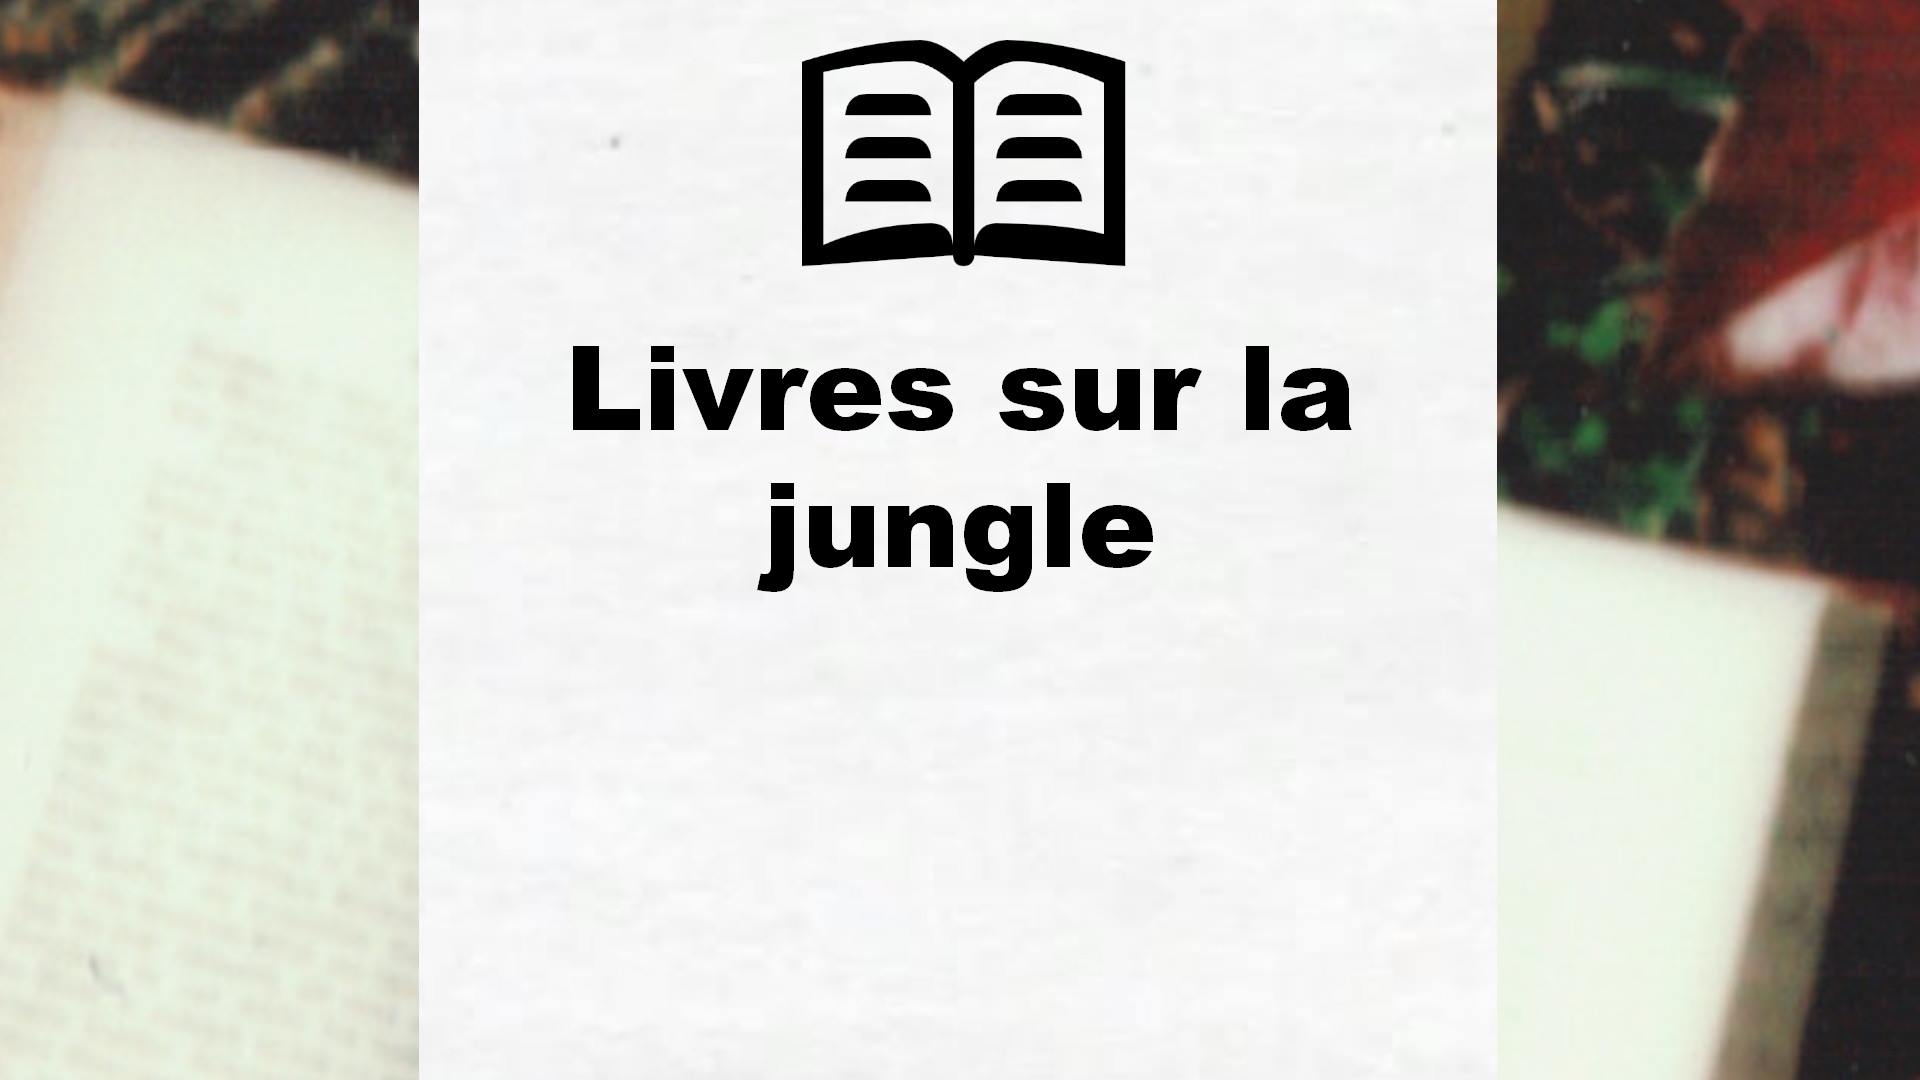 Livres sur la jungle